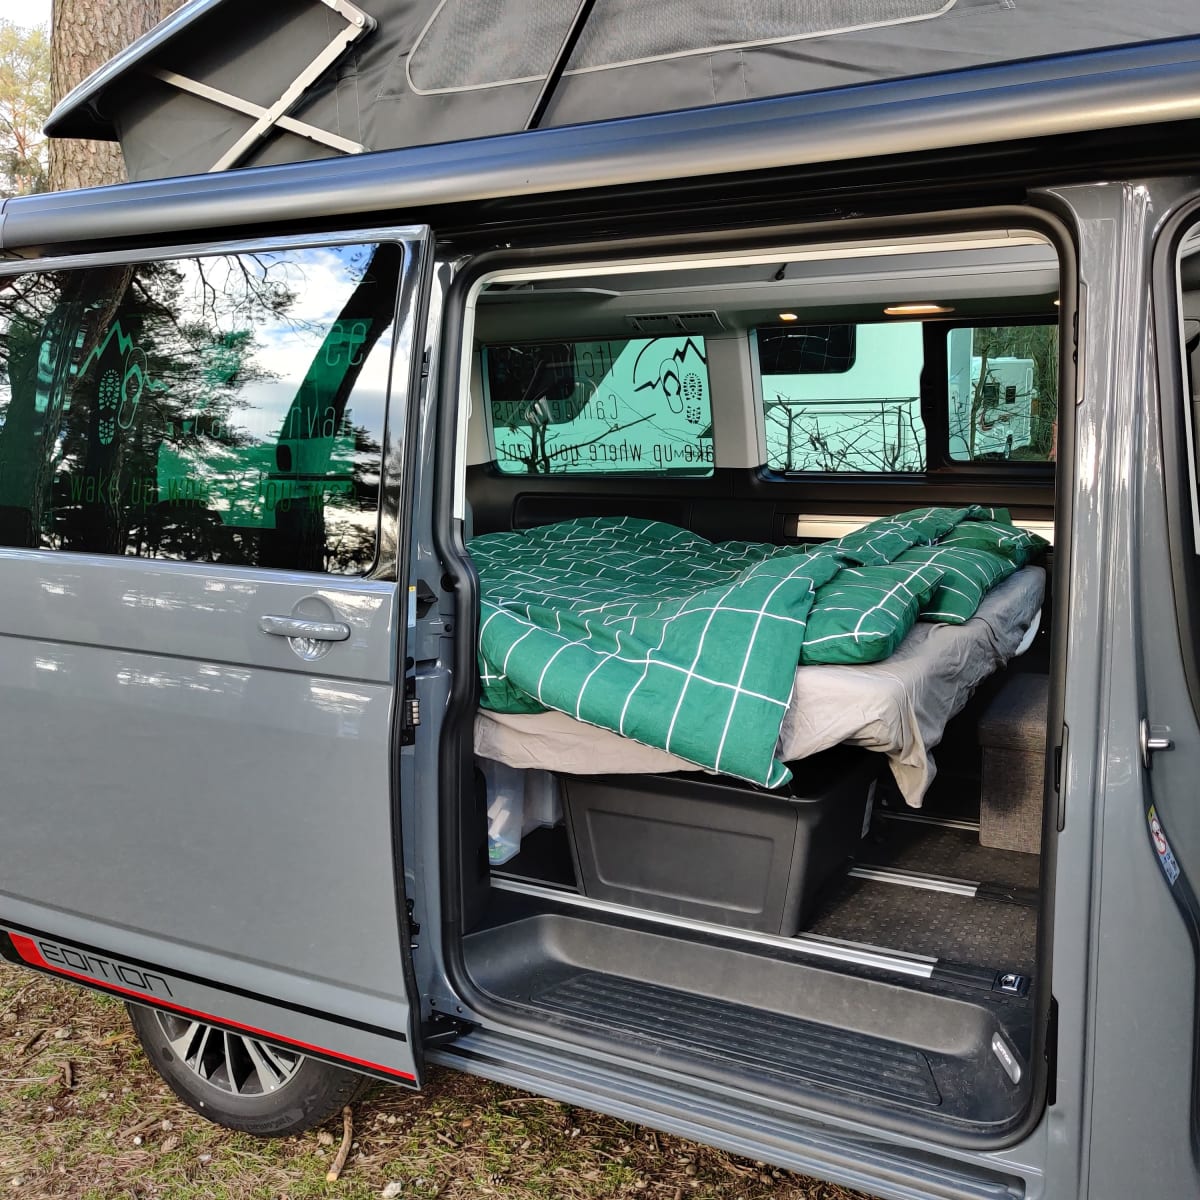 Fornello portatile da campeggio — Arno Caravan